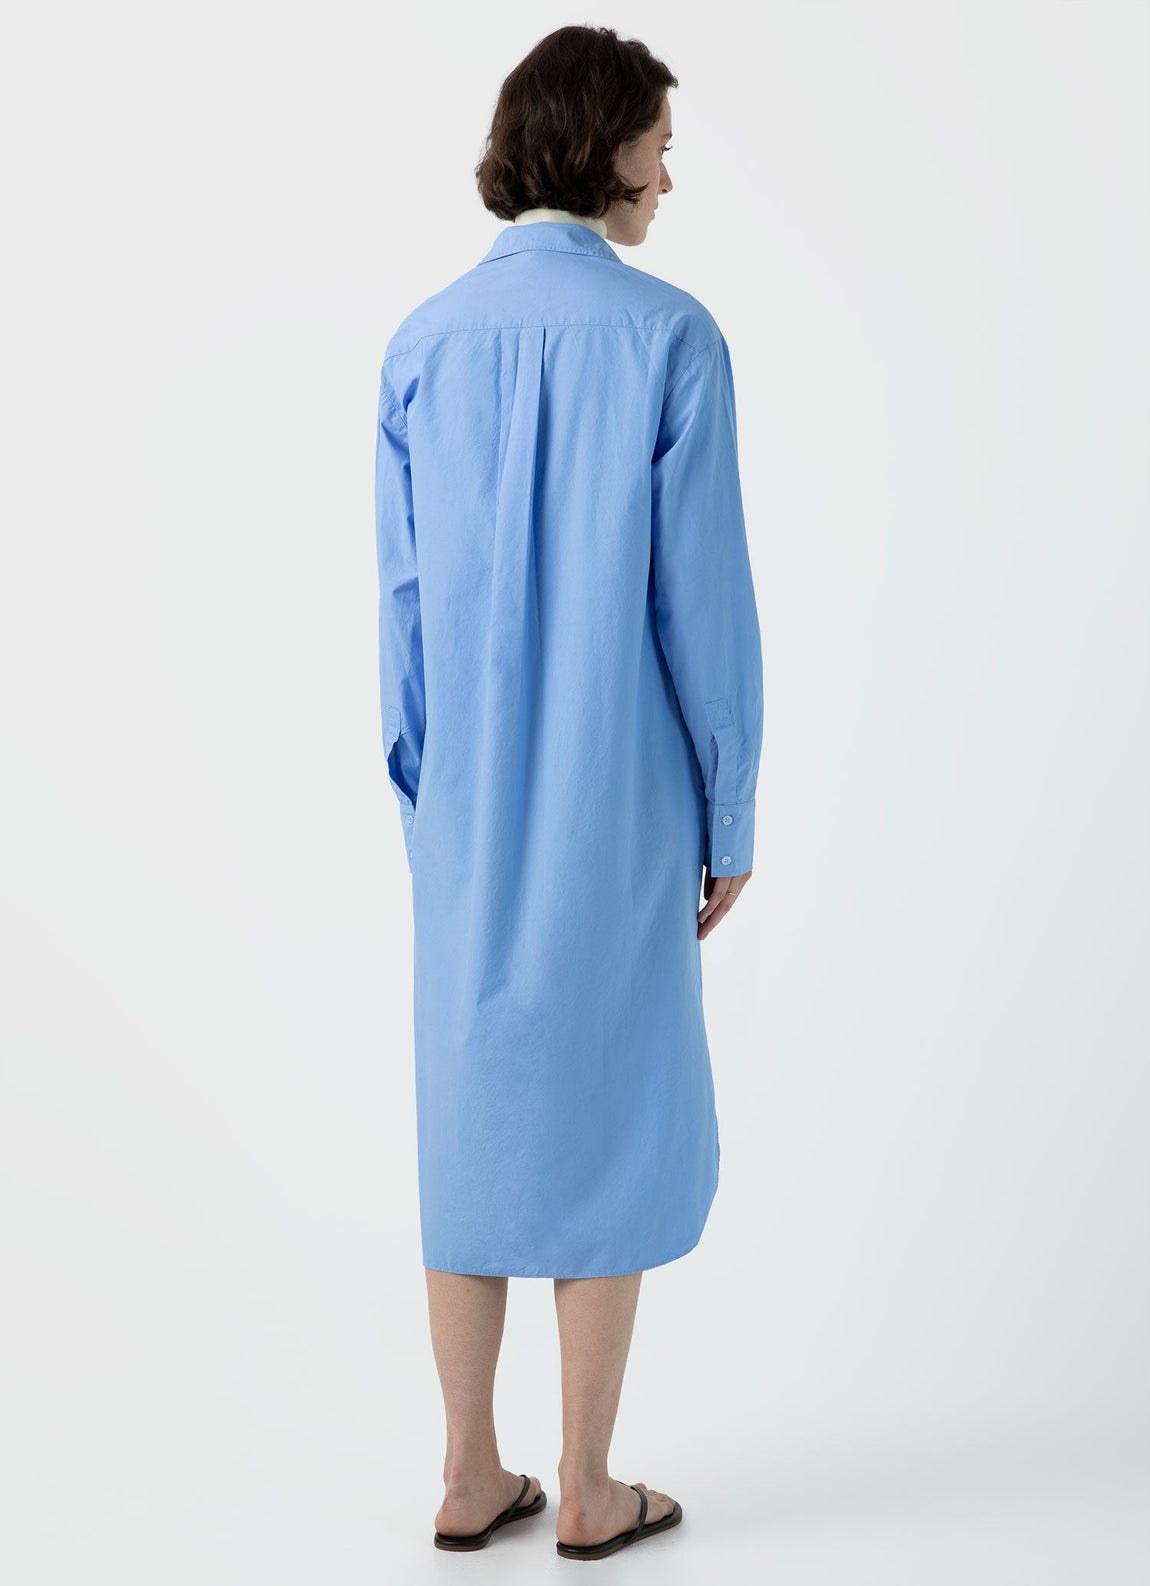 Women's Cotton Poplin Shirt Dress in Mid Blue